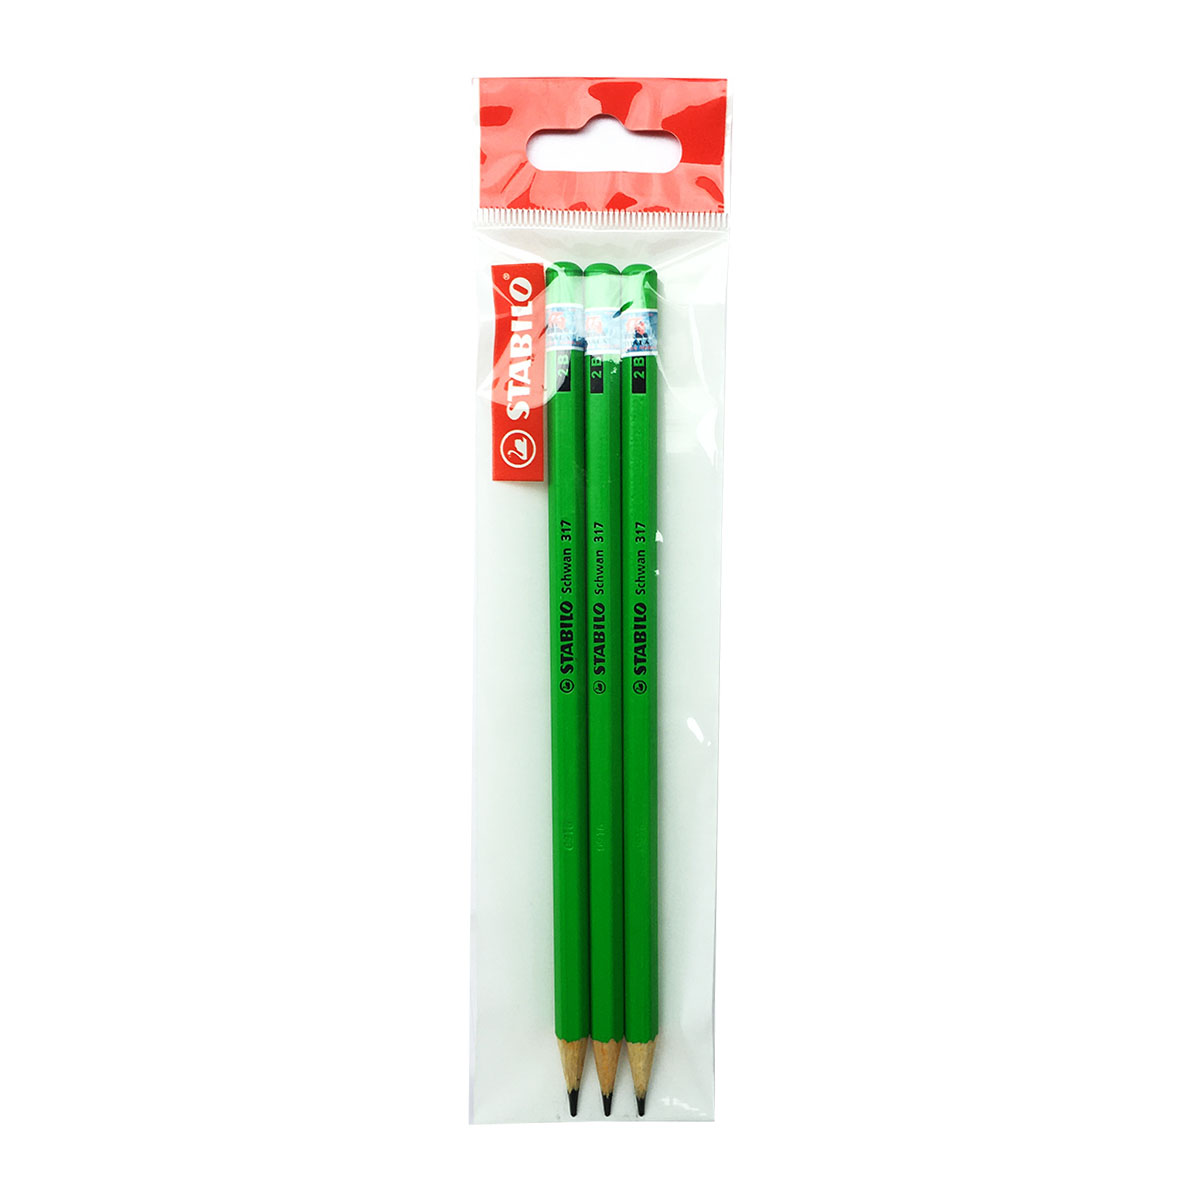 Combo bút chì gỗ STABILO Schwan 317 2B thân màu neon - Bộ 6 bút thân màu cam neon + Chuốt chì PS4538  (PC317R-C6S)